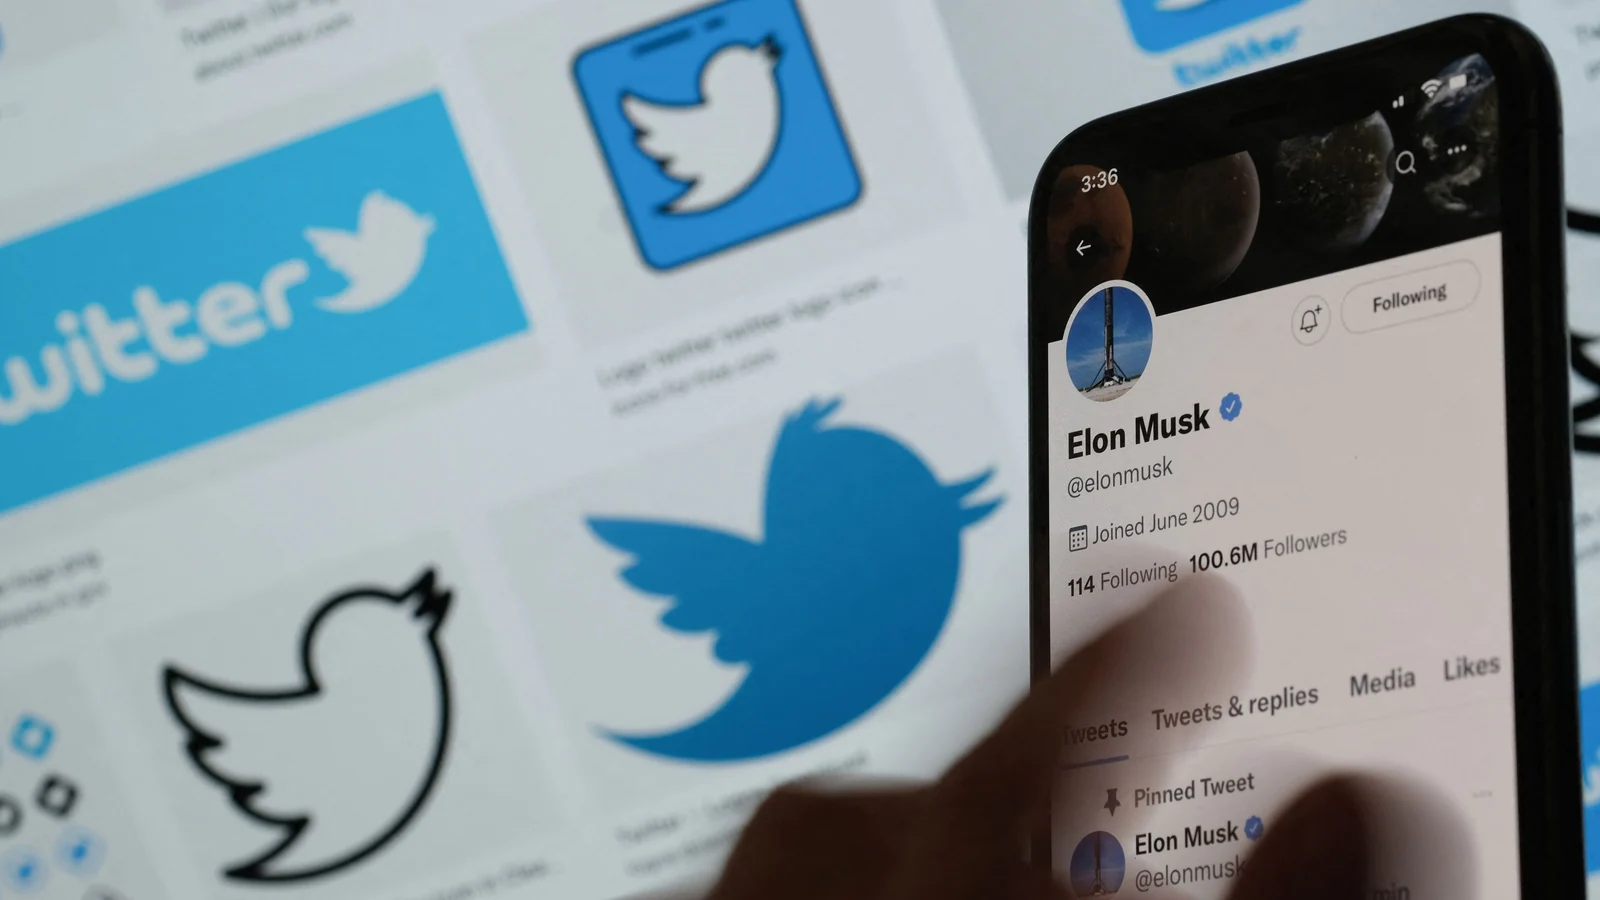 واکنش کارکنان توییتر پس از اینکه ایلان ماسک جهان را شوکه کرد و با کنار گذاشتن یک کلان 44 میلیارد دلاری جهان را شوکه کرد.